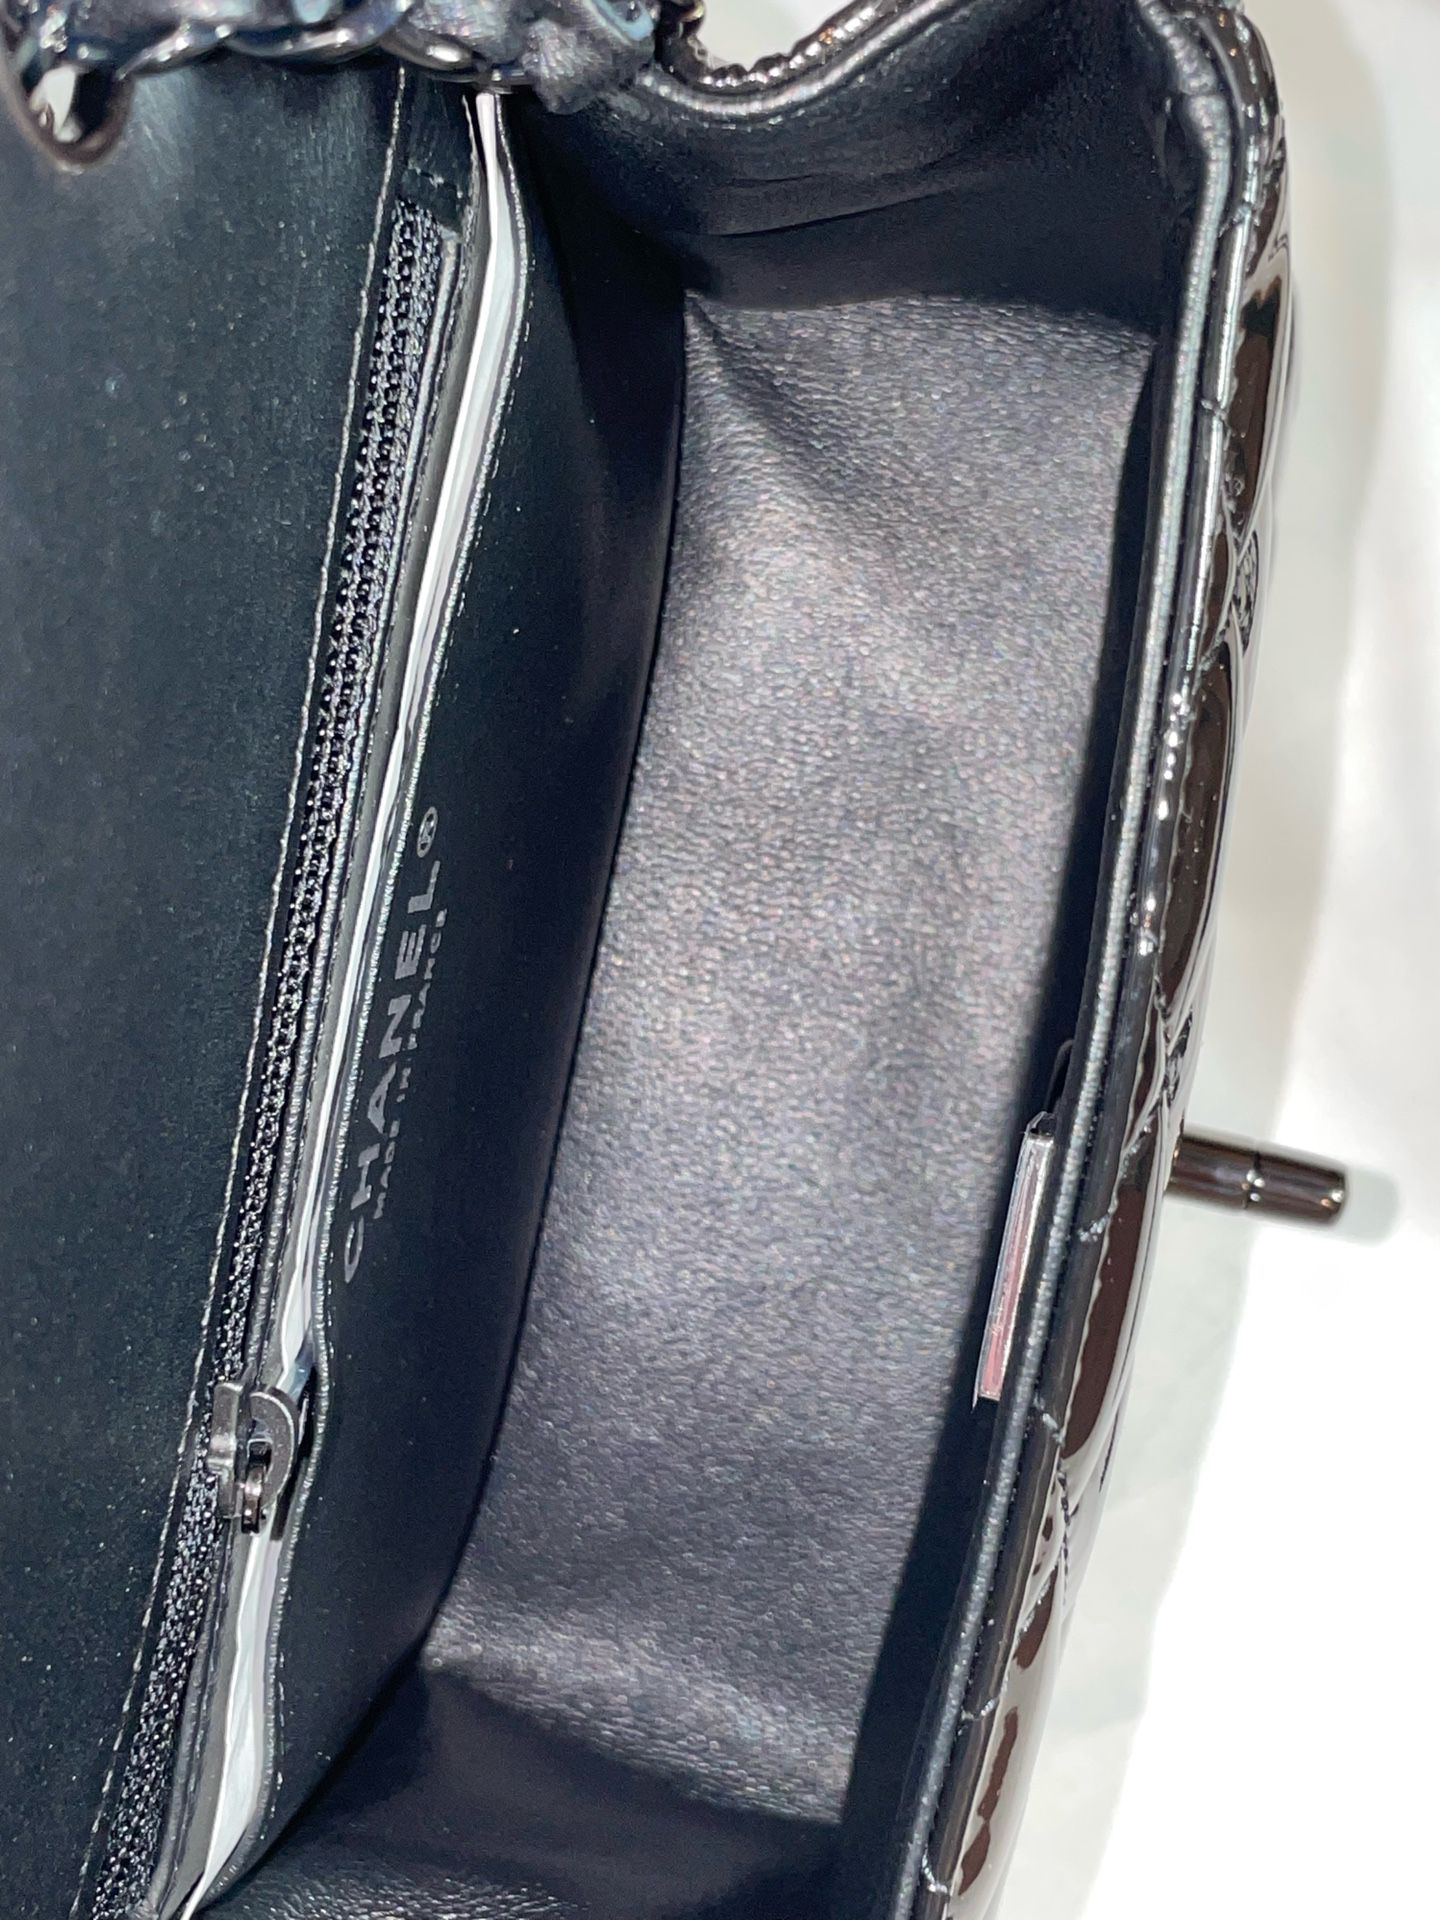 Mini Flap Bag Patent Calfskin Black Metal 